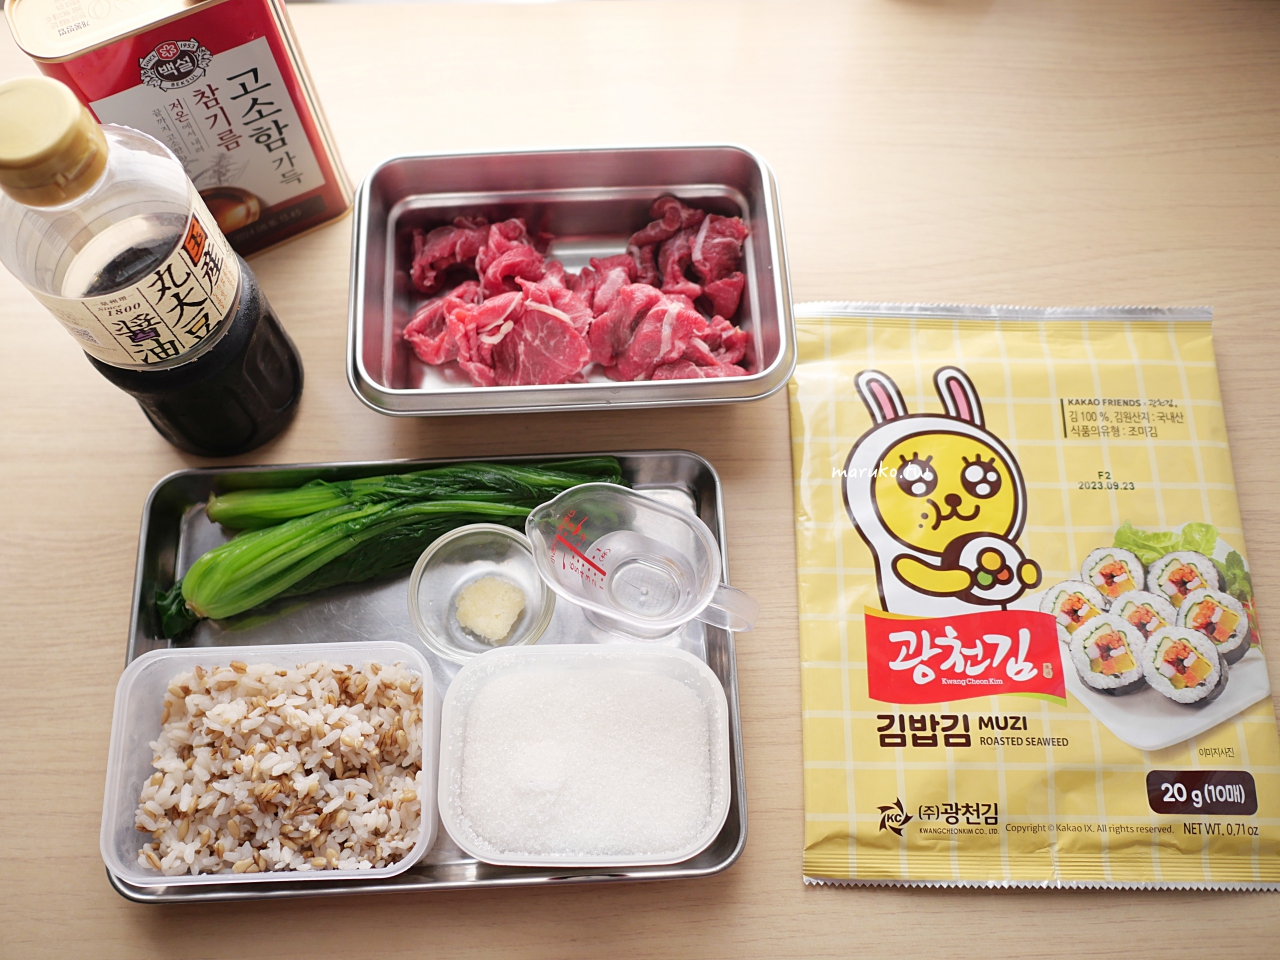 【食譜】韓式烤肉飯 韓式醃肉醬自己做 甜甜又開胃的醬燒豬肉這樣做最好吃 @Maruko與美食有個約會